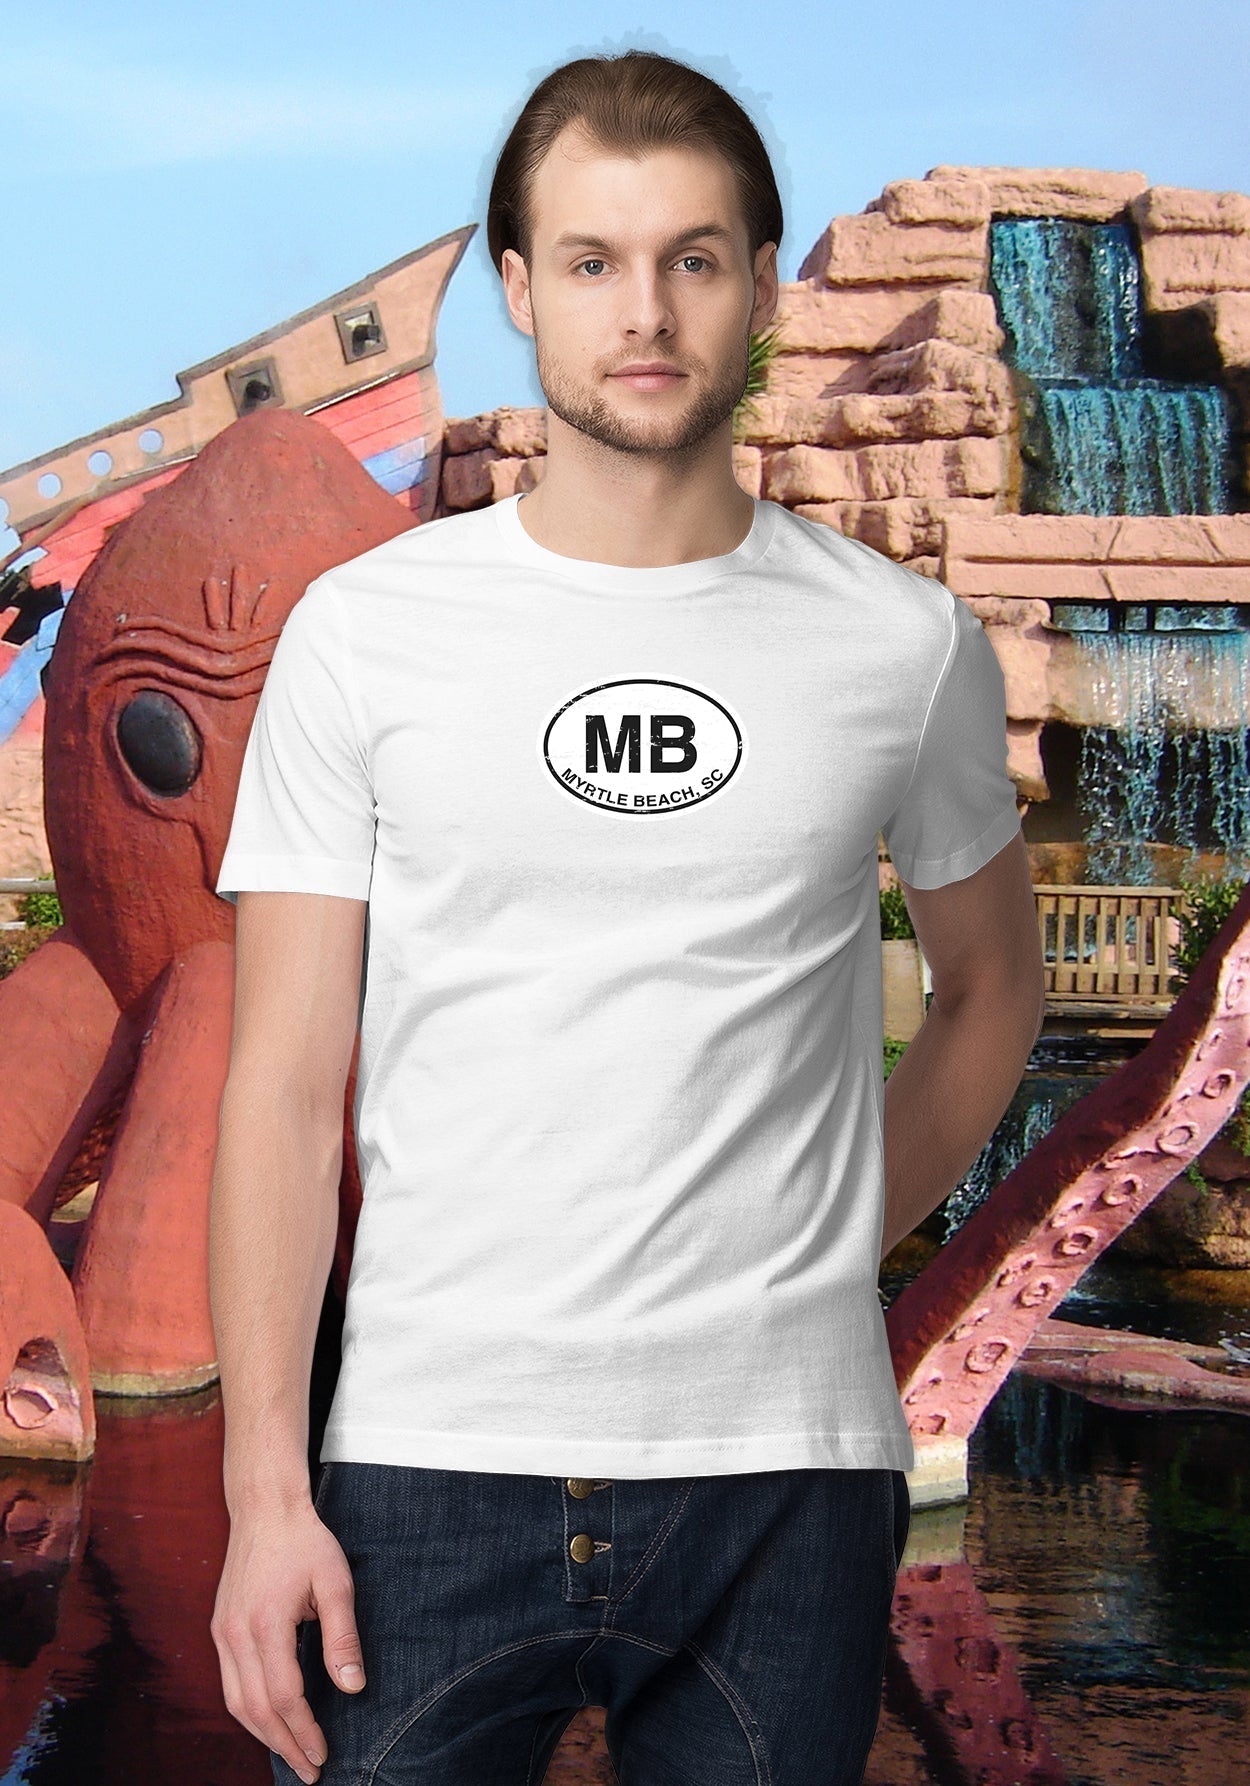 Myrtle Beach Men's Classic T-Shirt Souvenir Gift - My Destination Location